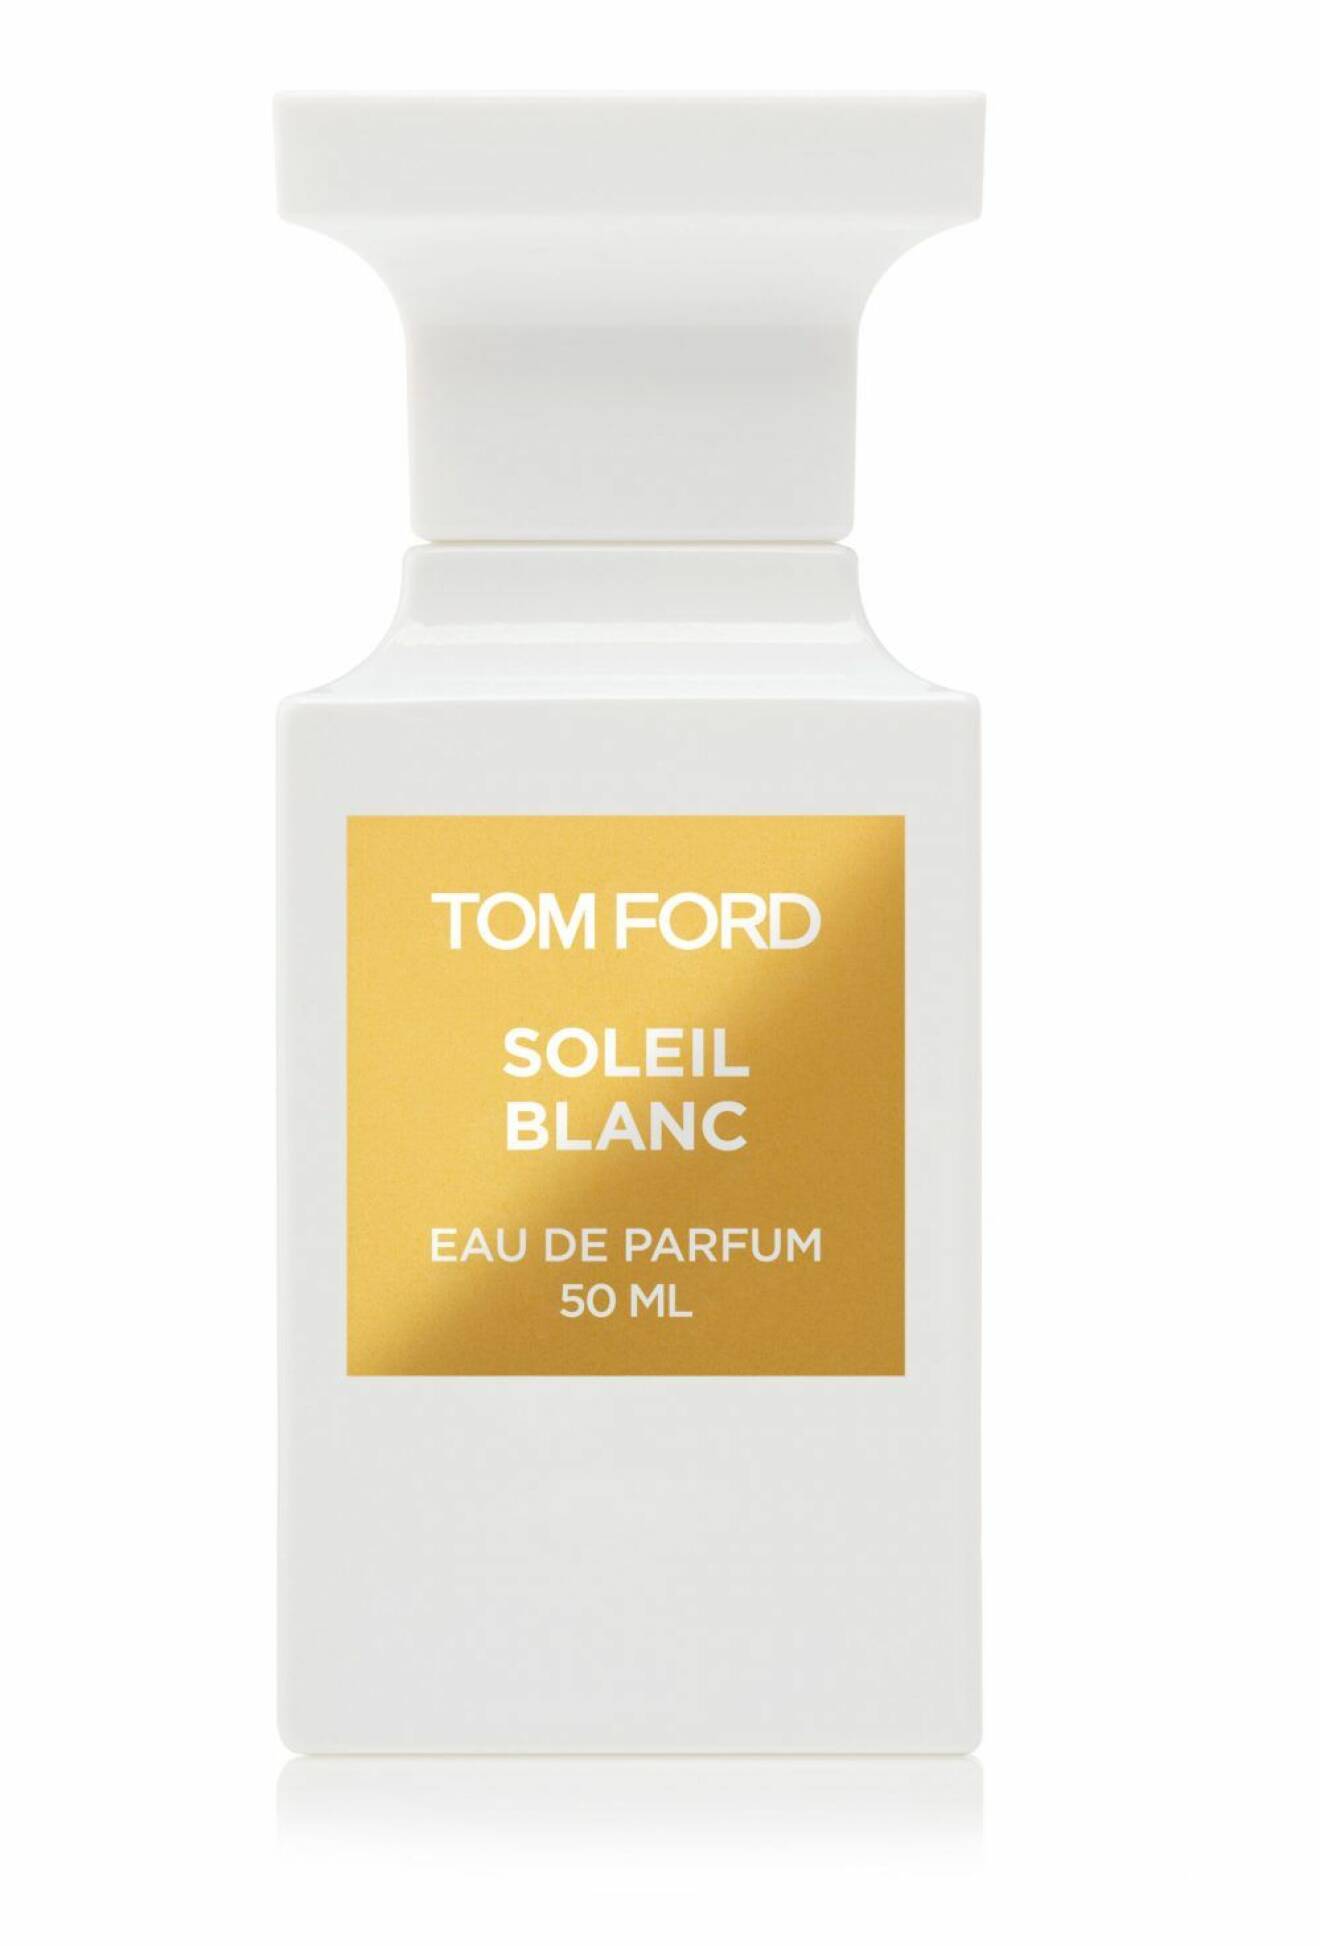 Soleil blanc, Tom Ford.